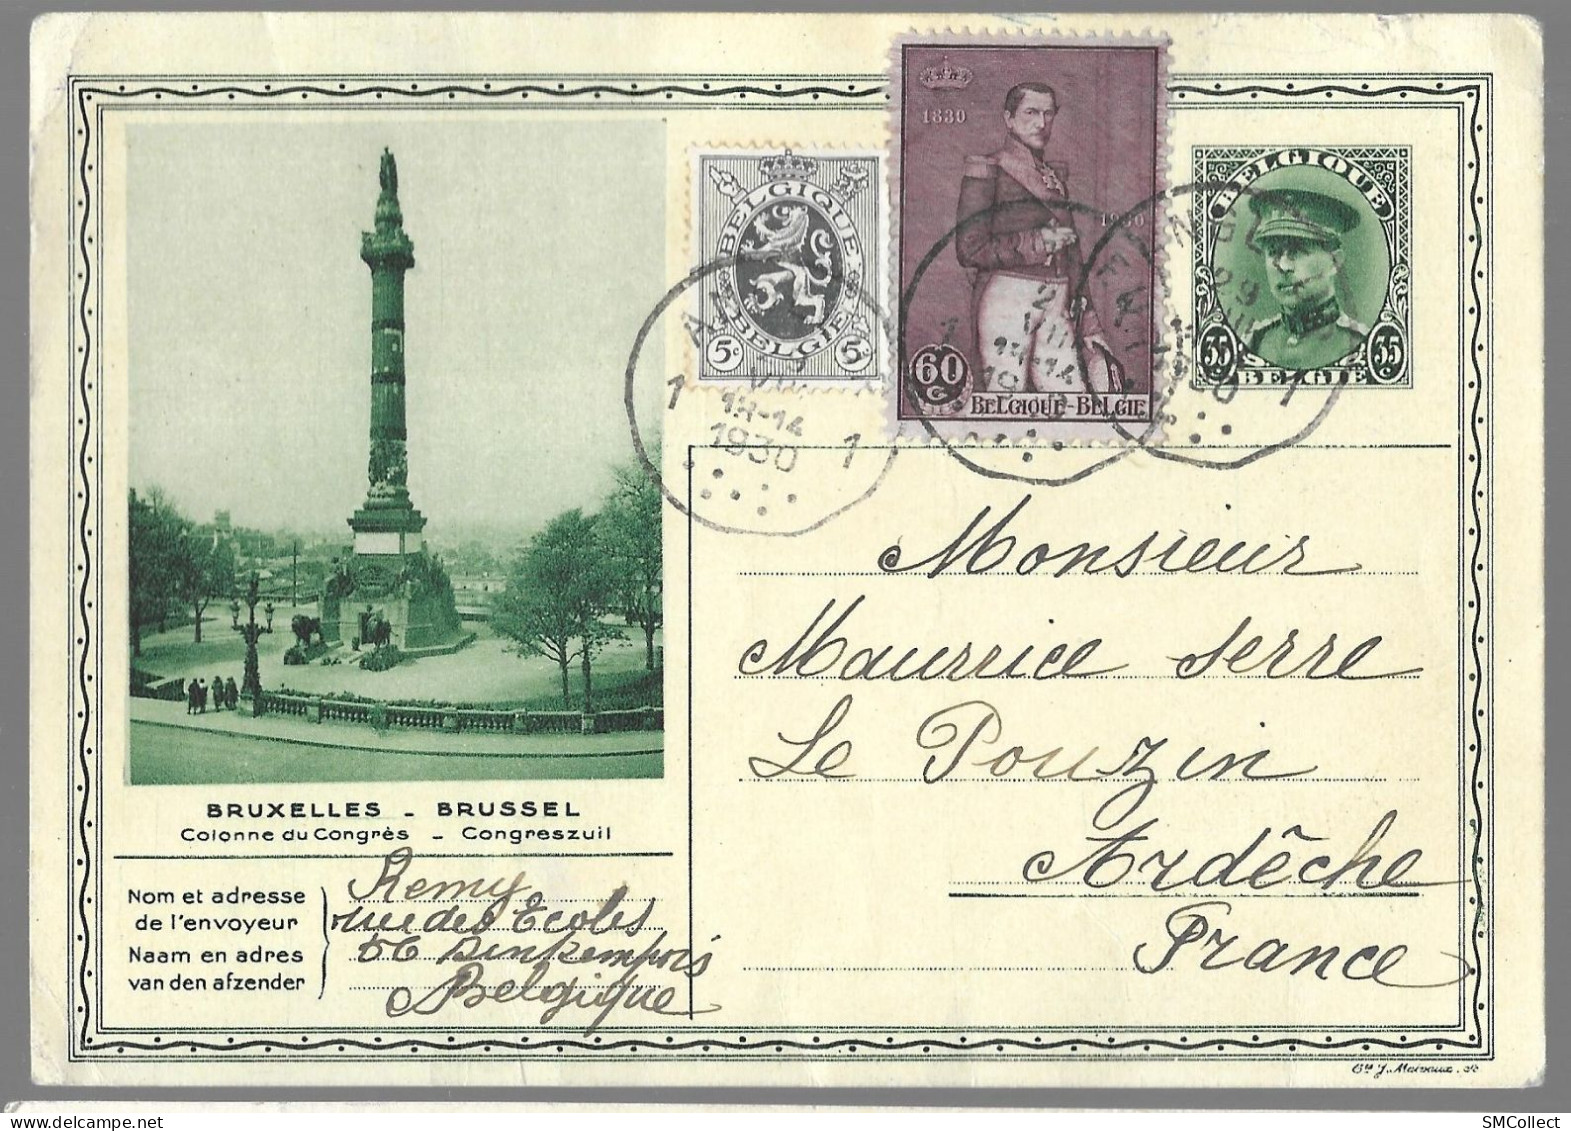 Belgique, Entier Postal "colonne Du Congrès" 35 Centimes + Complément De 65 Centimes (étranger) TAD 1930 (GF3919) - Tarjetas 1909-1934